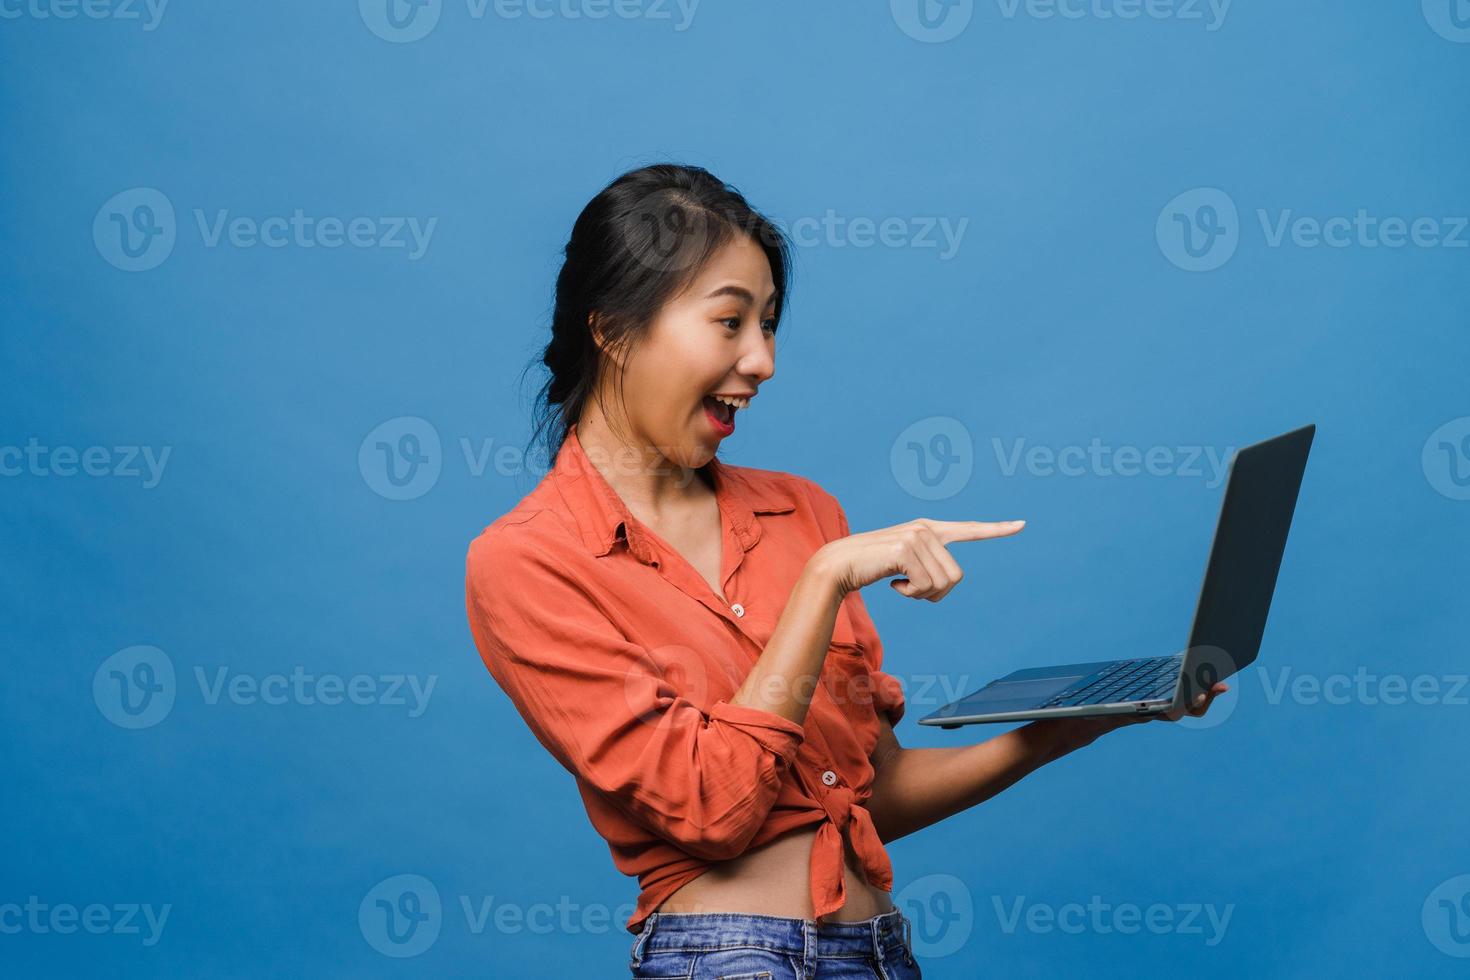 jonge aziatische dame die laptop gebruikt met positieve uitdrukking, breed glimlacht, gekleed in casual kleding die geluk voelt en geïsoleerd op blauwe achtergrond staat. gelukkige schattige blije vrouw verheugt zich over succes. foto